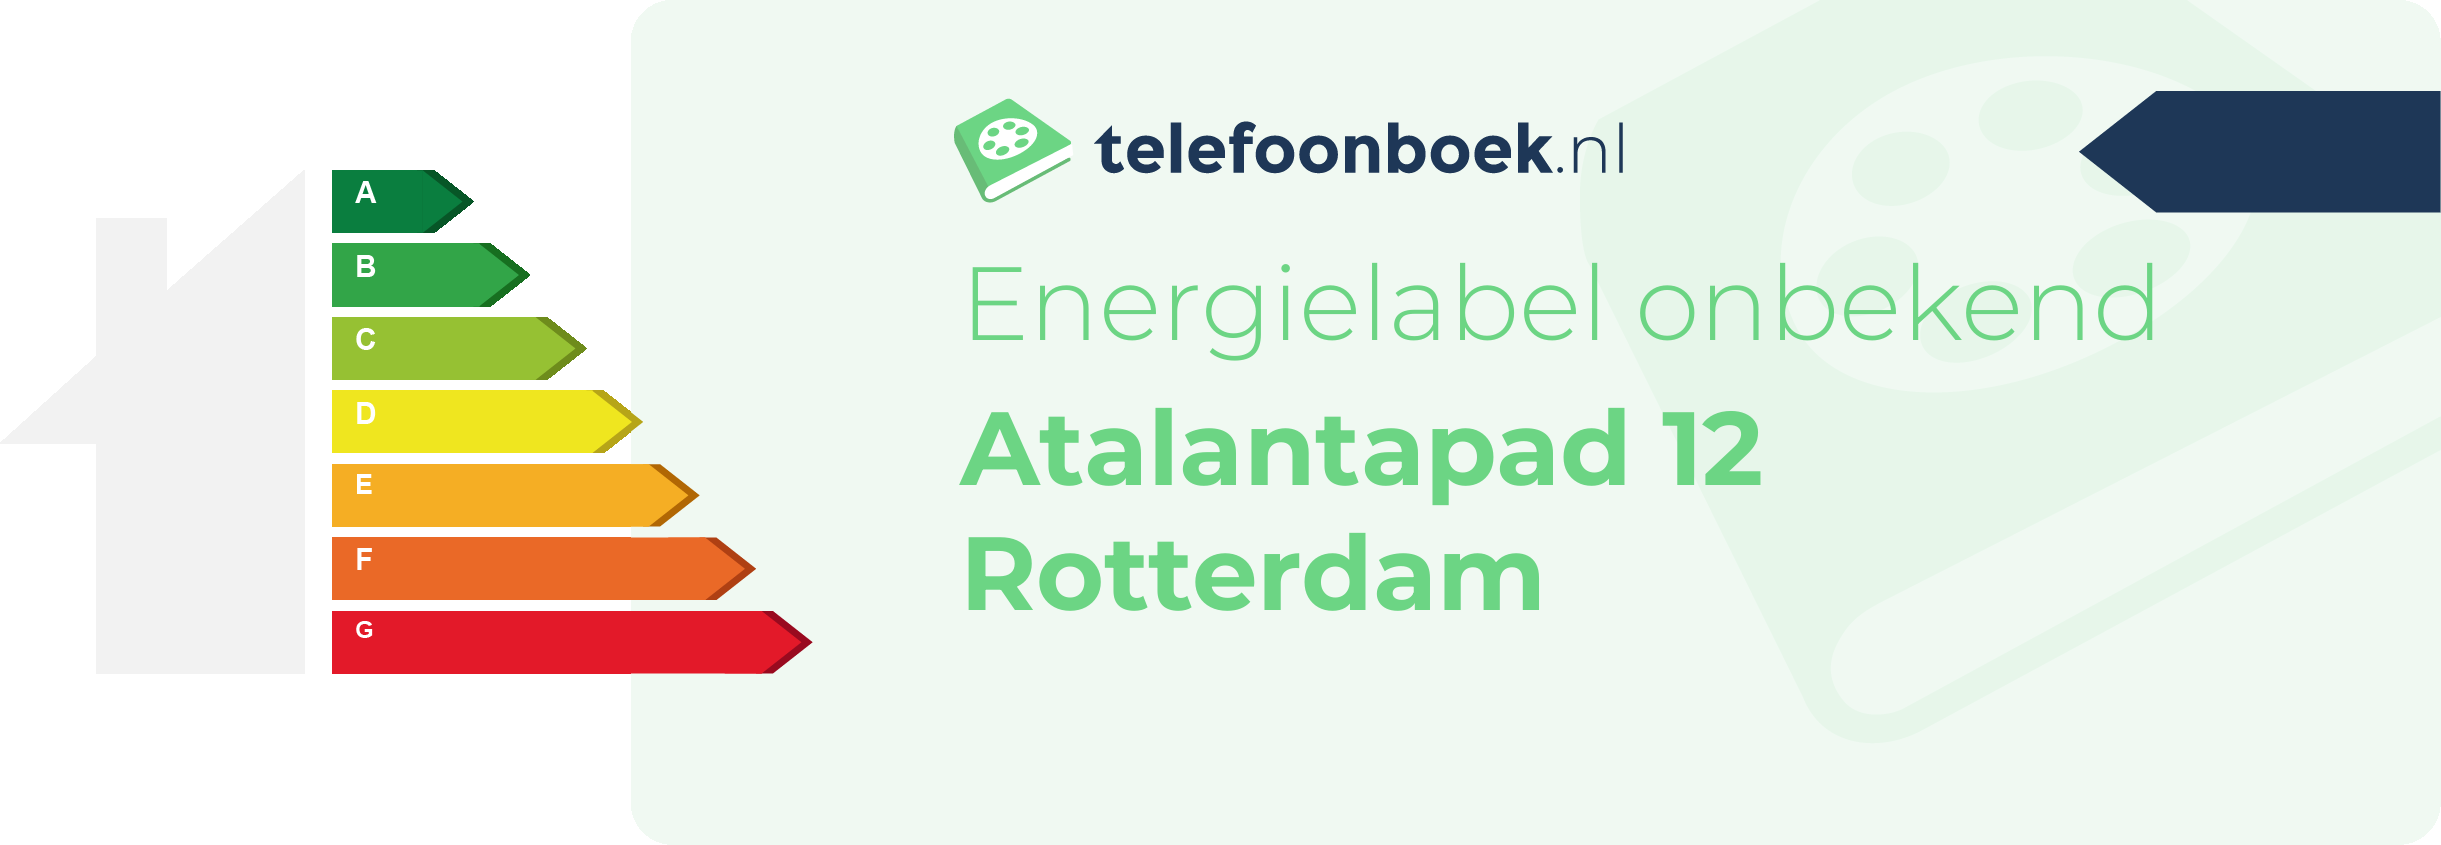 Energielabel Atalantapad 12 Rotterdam